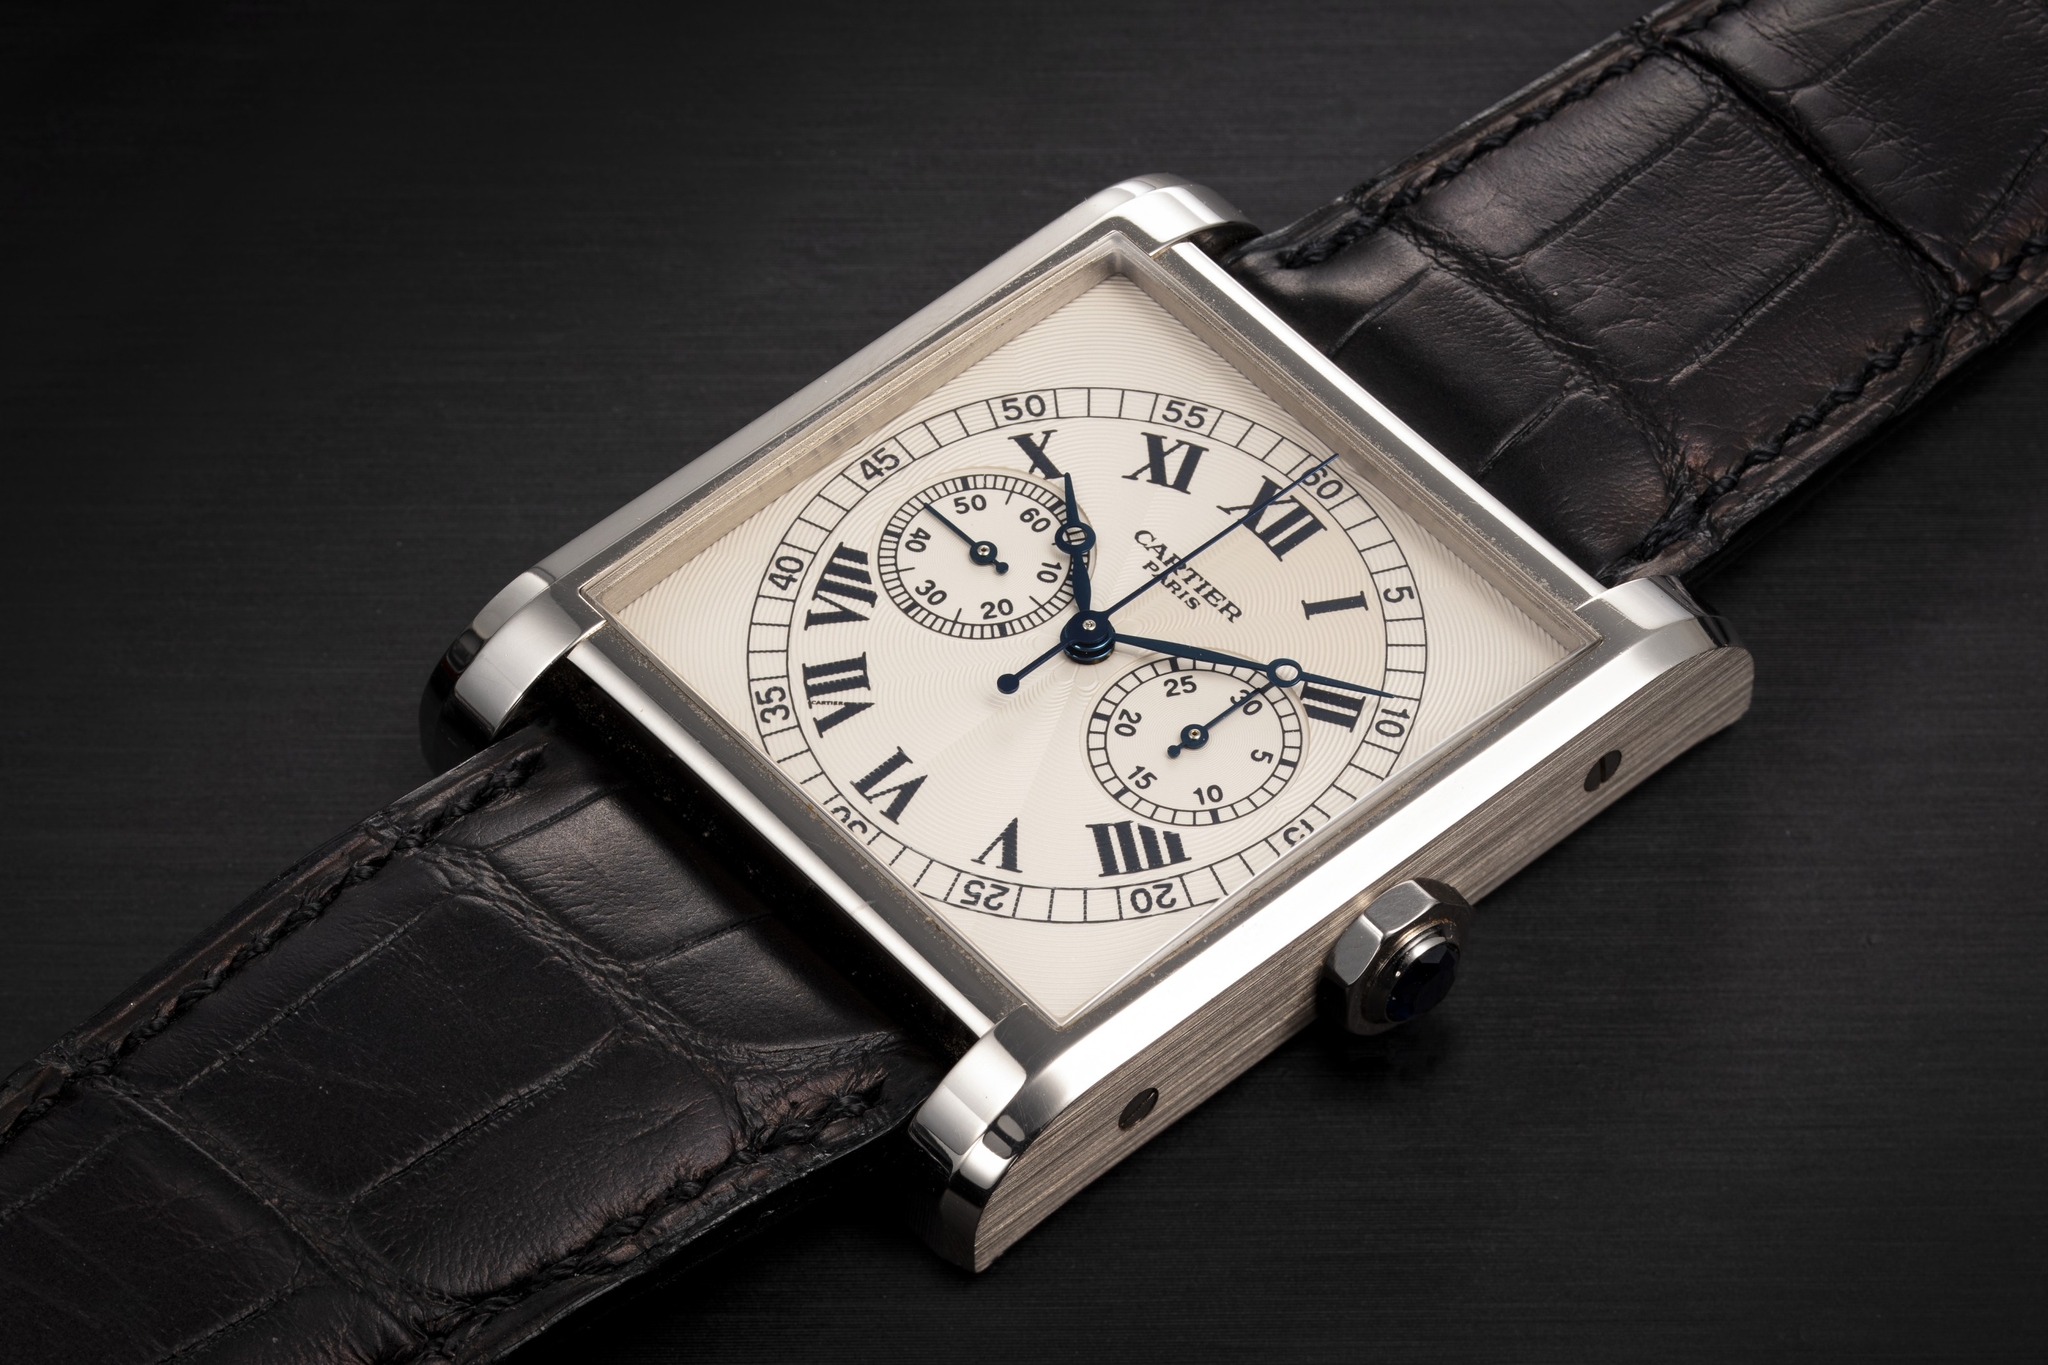 Đồng hồ Cartier Tank sản xuất năm 2008 được bán với giá 87.500 USD trong khi giá ước tính từ 15.000 - 30.000 USD.